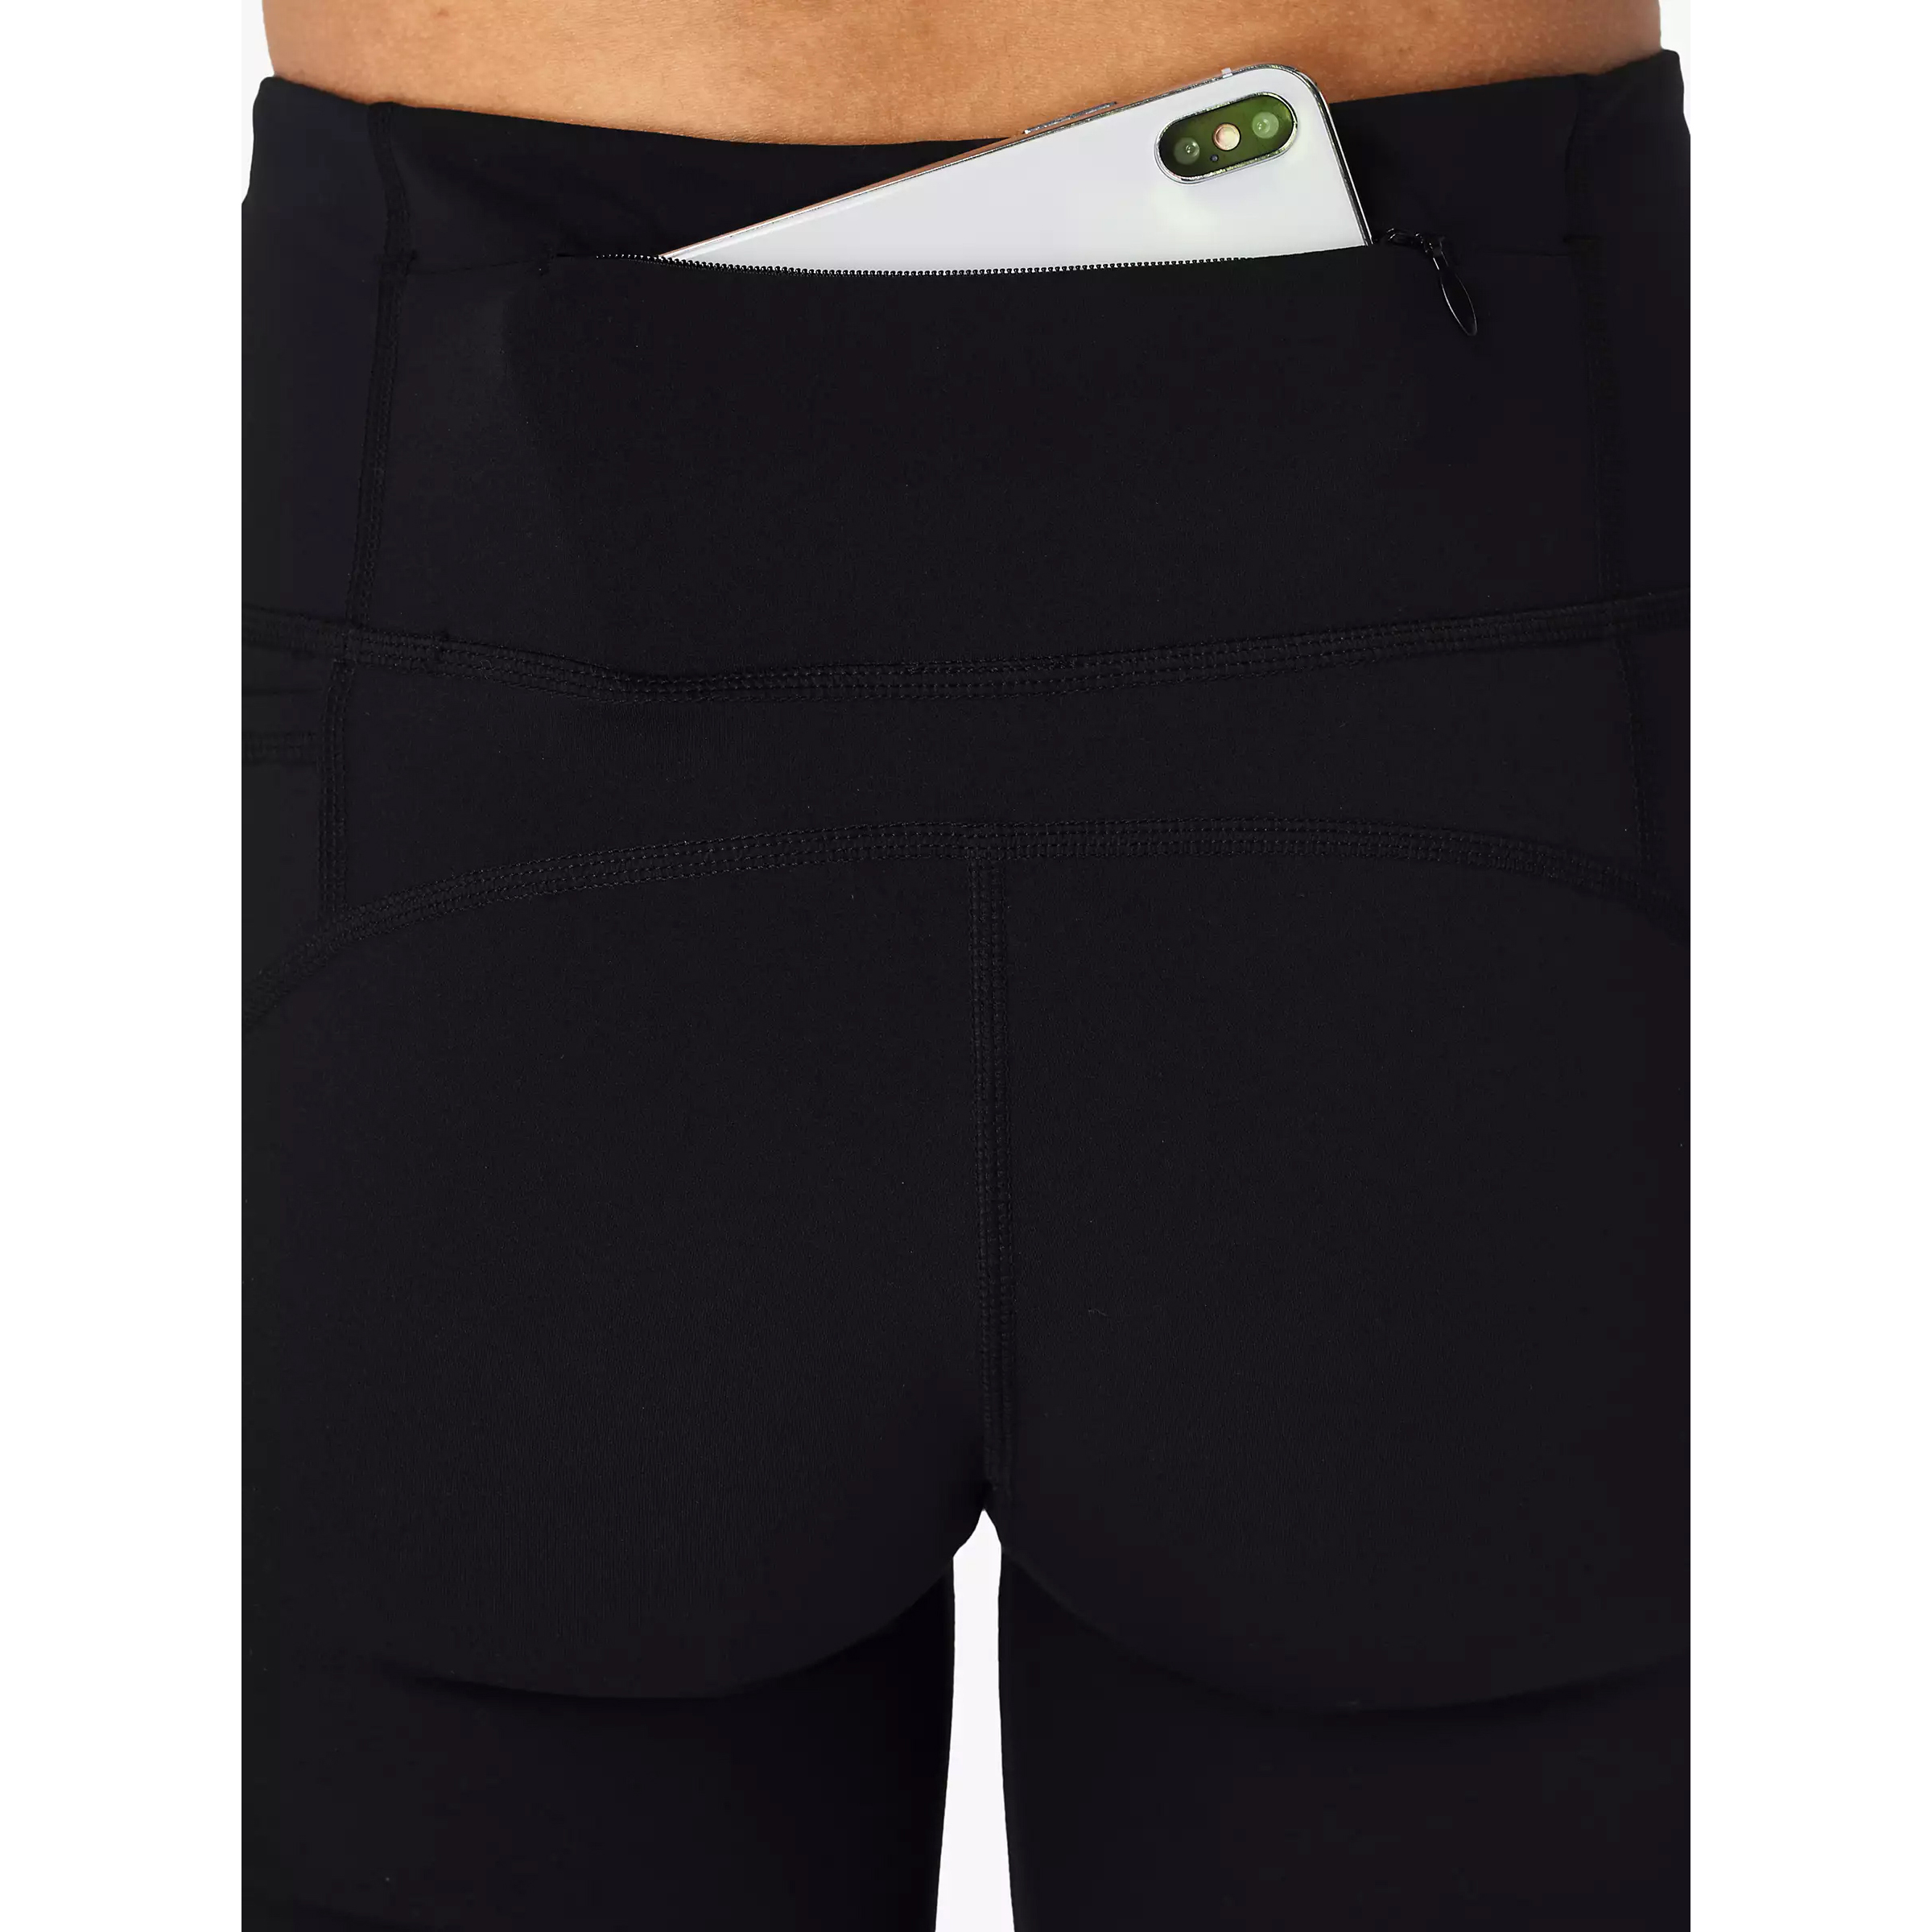 Side Pocket Solid Black Gym Shorts